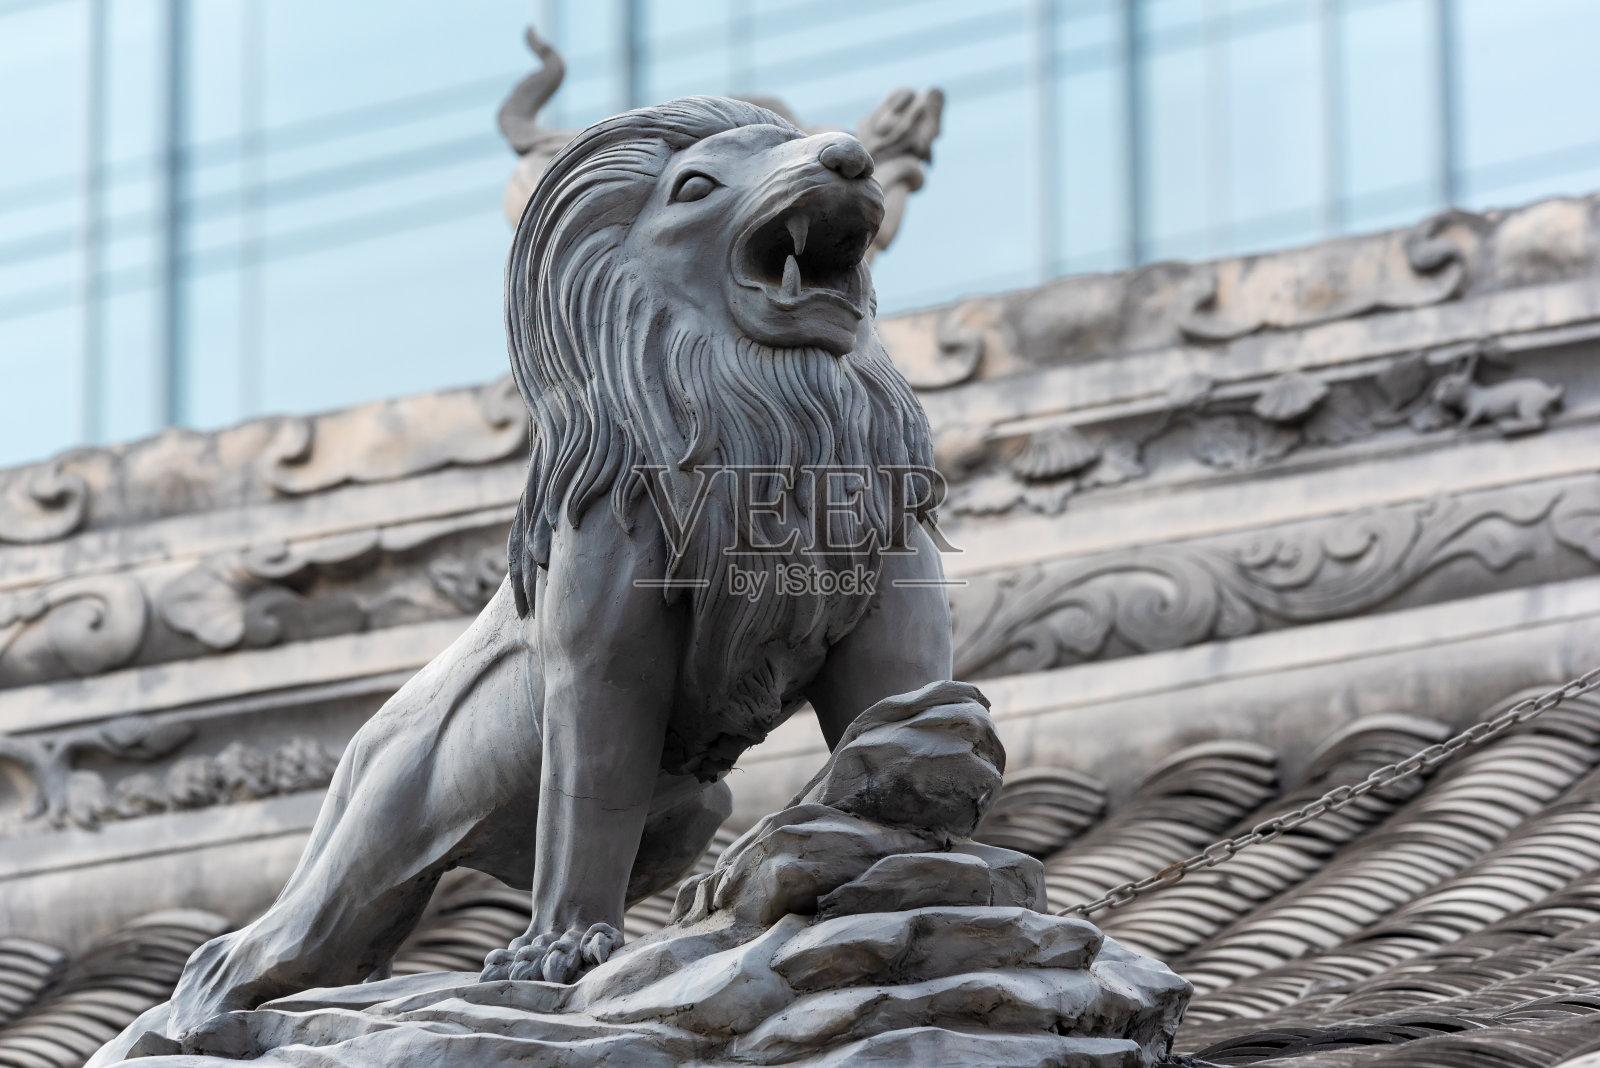 寺庙屋顶上的狮子雕塑照片摄影图片